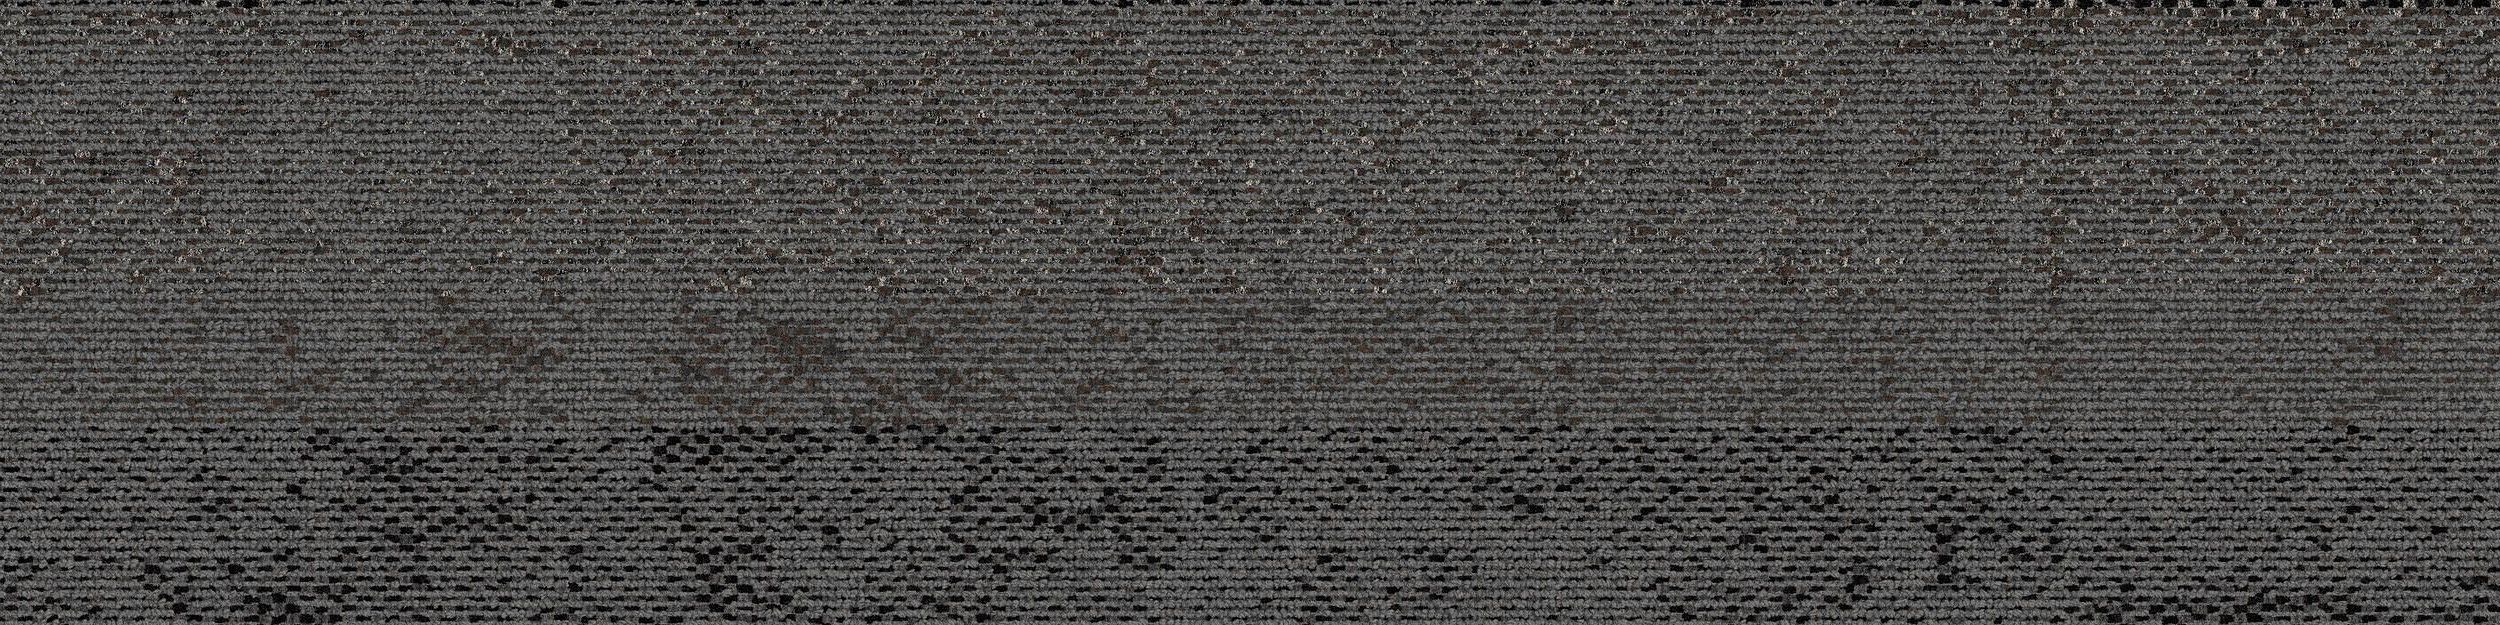 HN820 Carpet Tile In Slate Bildnummer 2